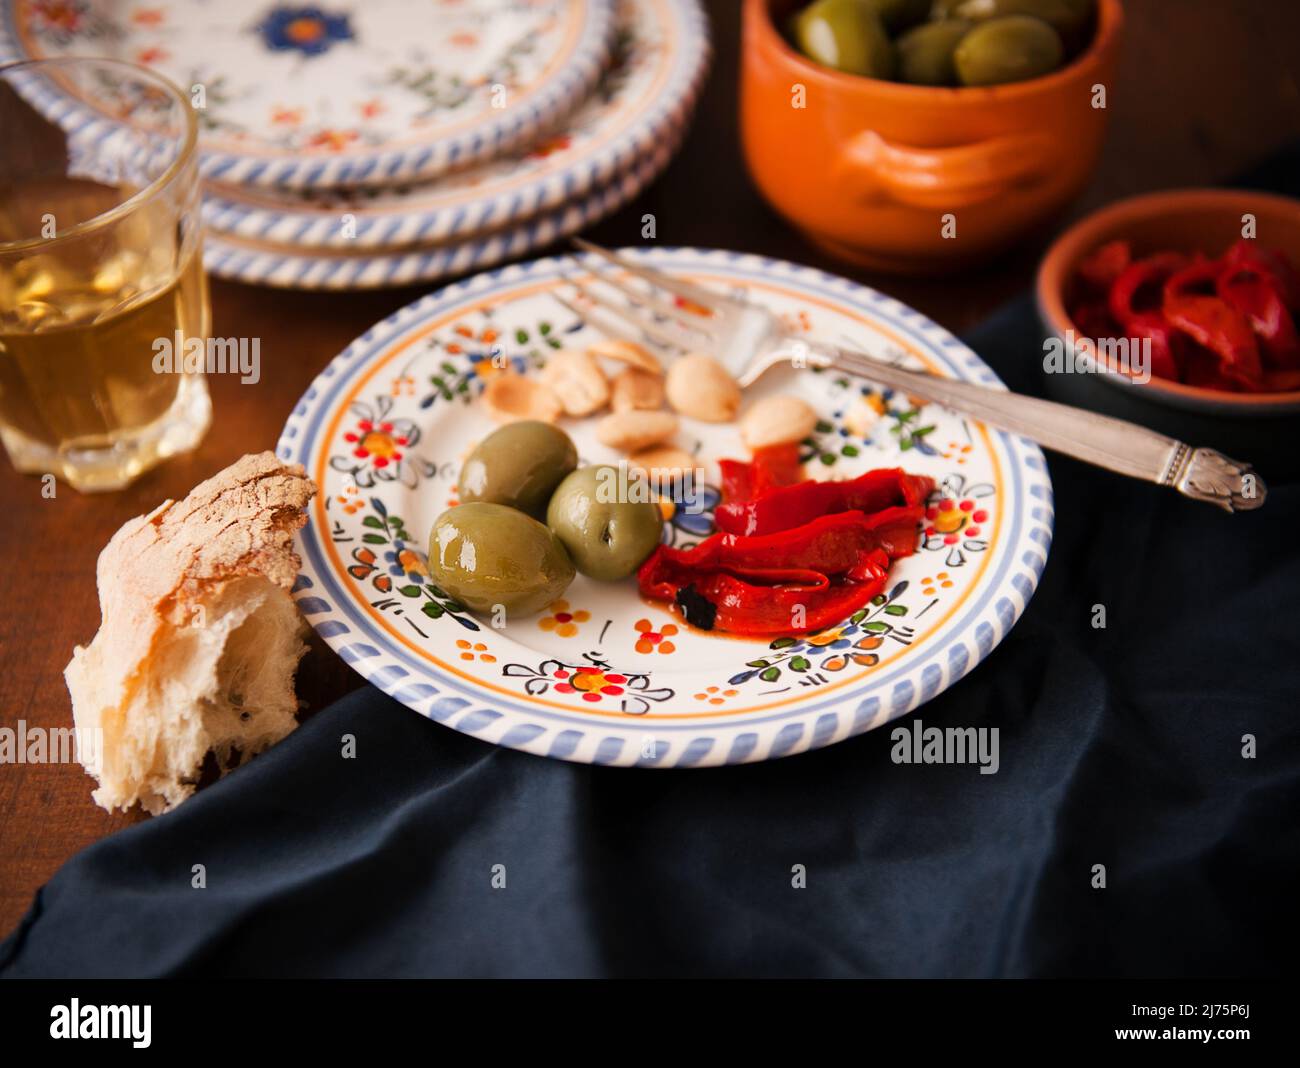 Piatto con una sola porzione di tapas; olive verdi, peperoni rossi arrostiti e mandorle; pane e vino bianco Foto Stock